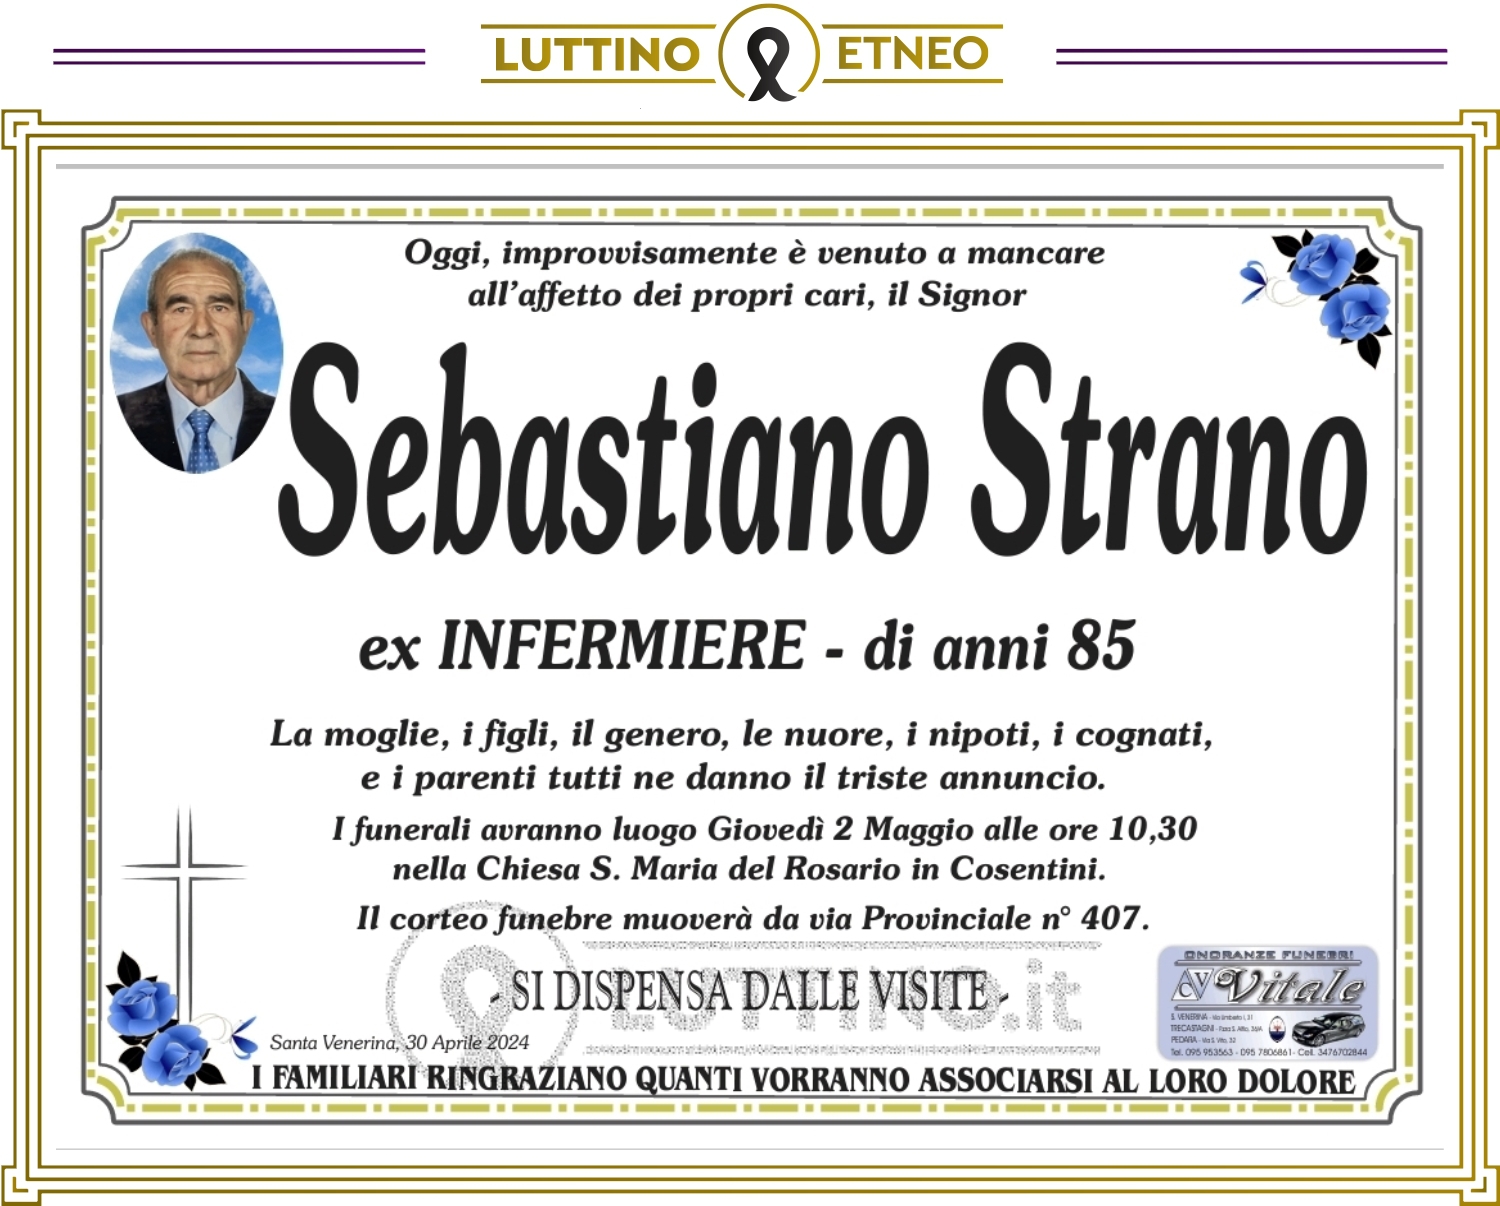 Sebastiano Strano